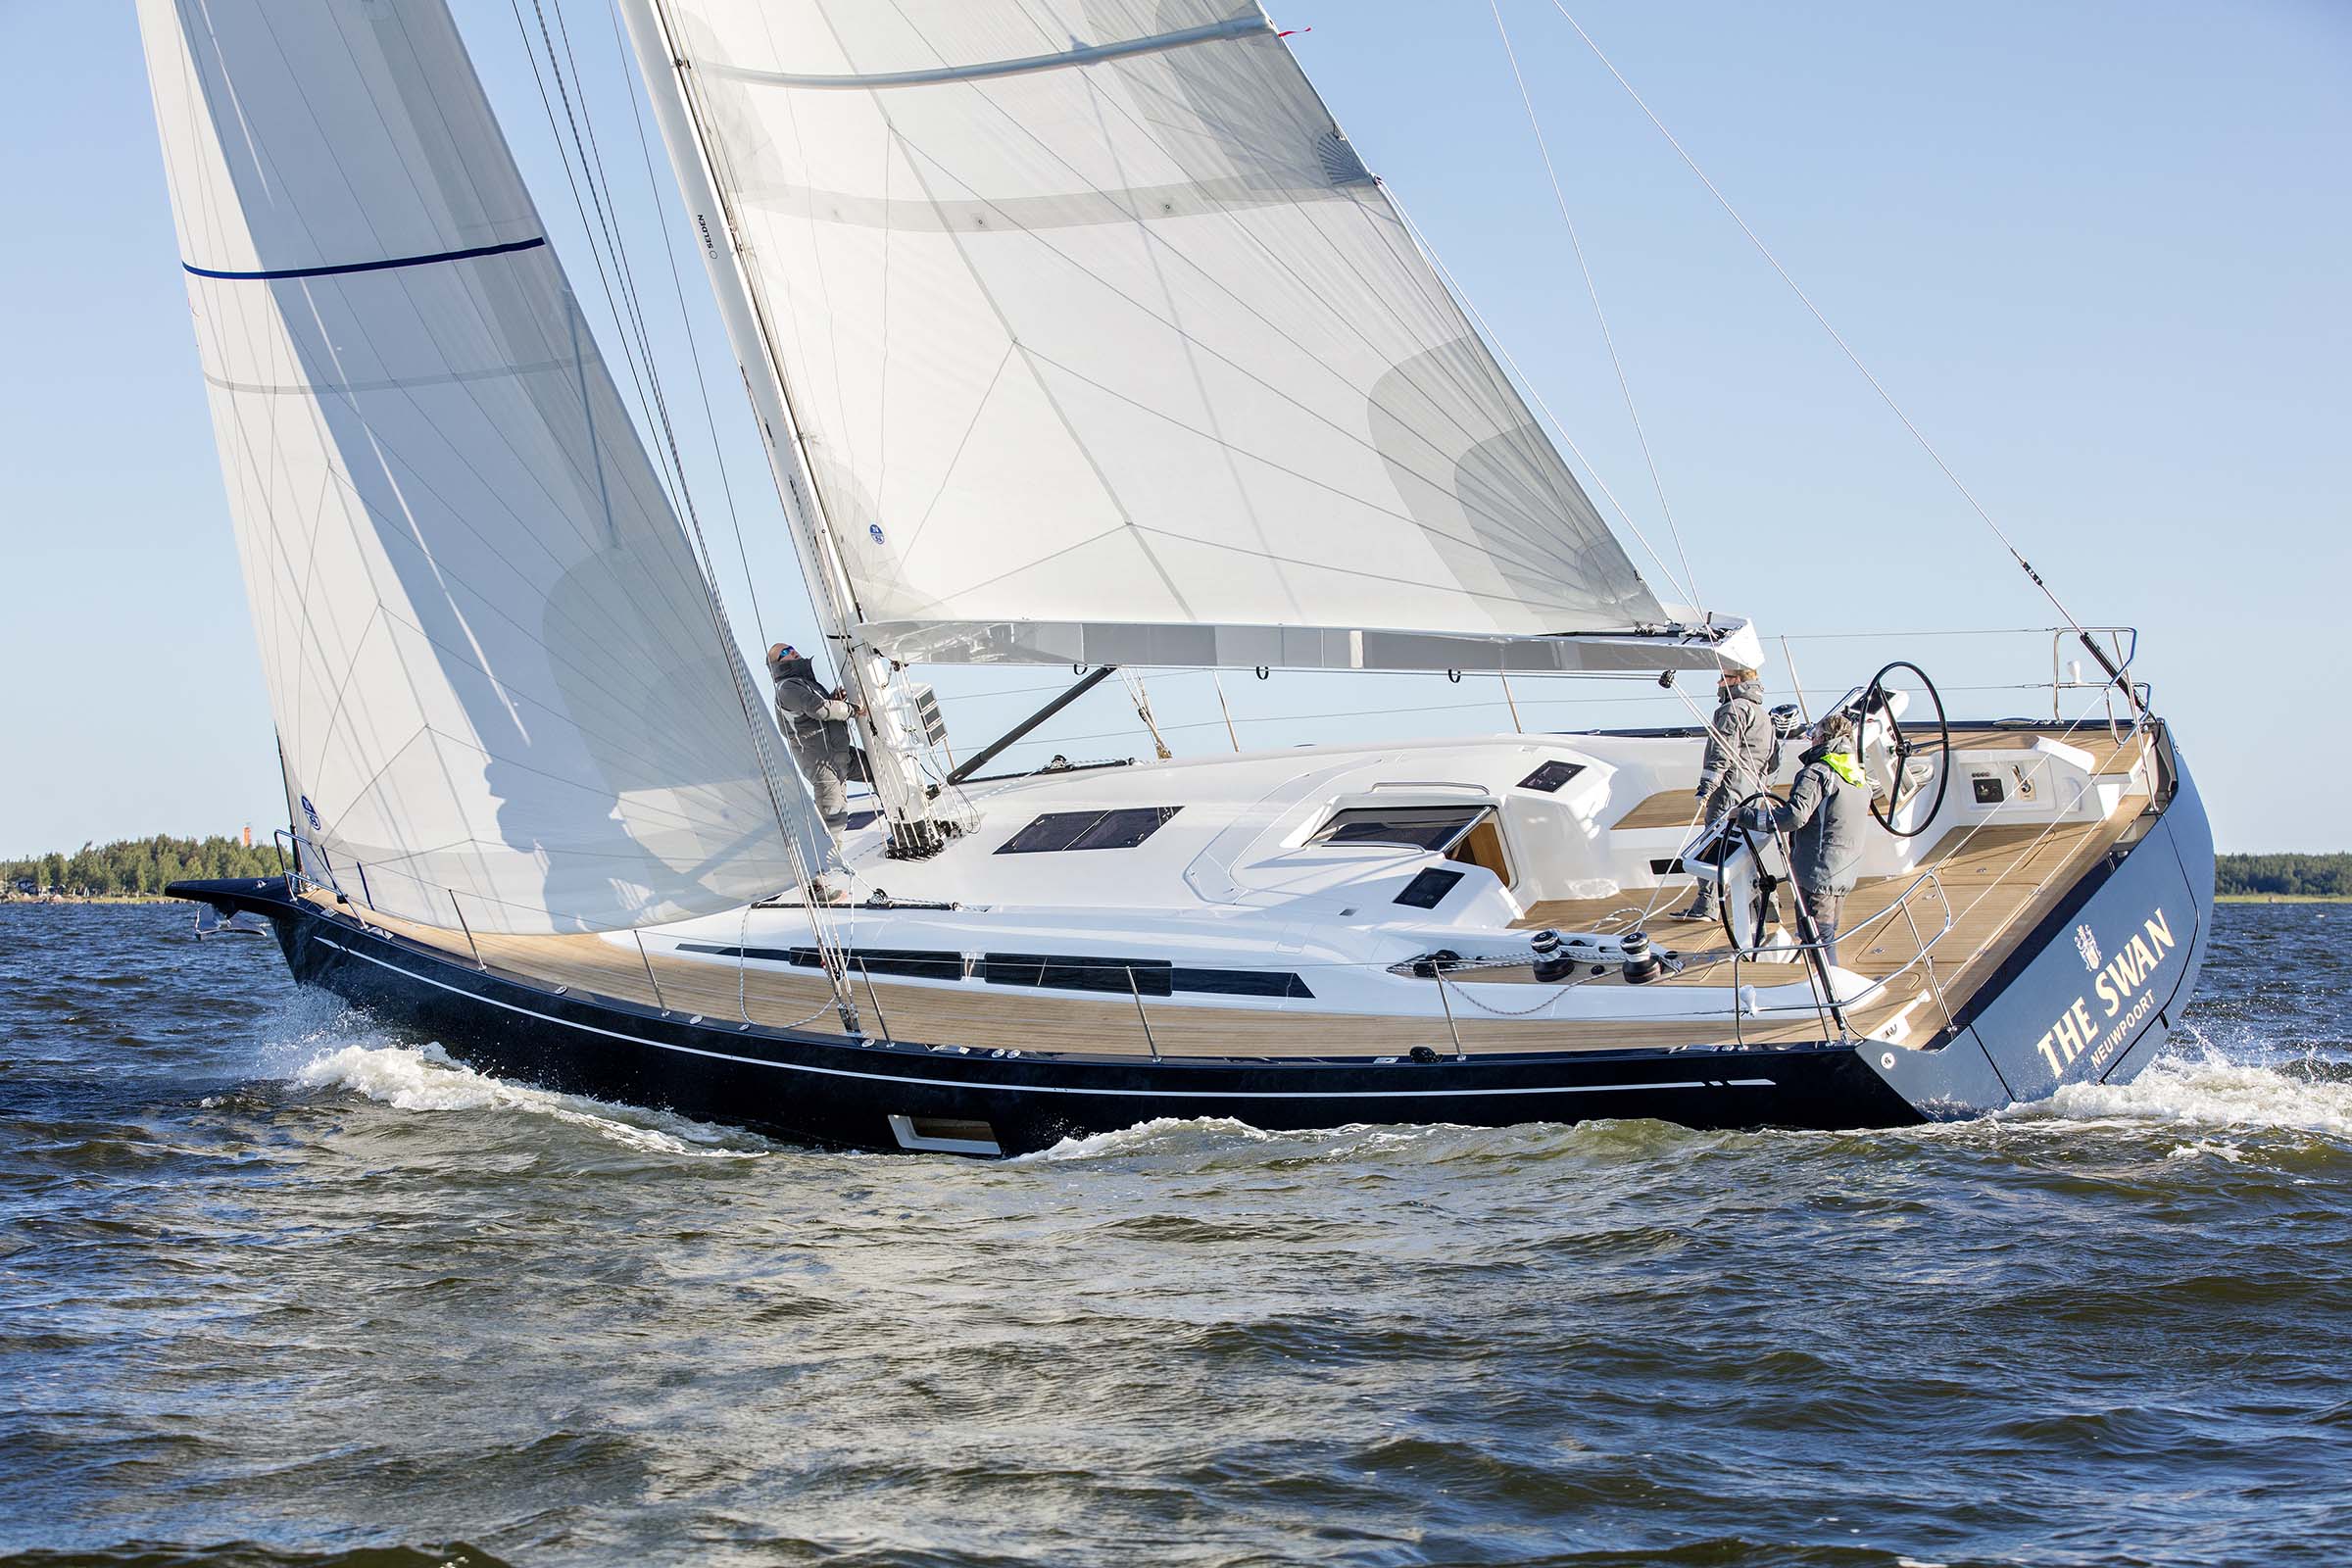 48 foot sailing yacht